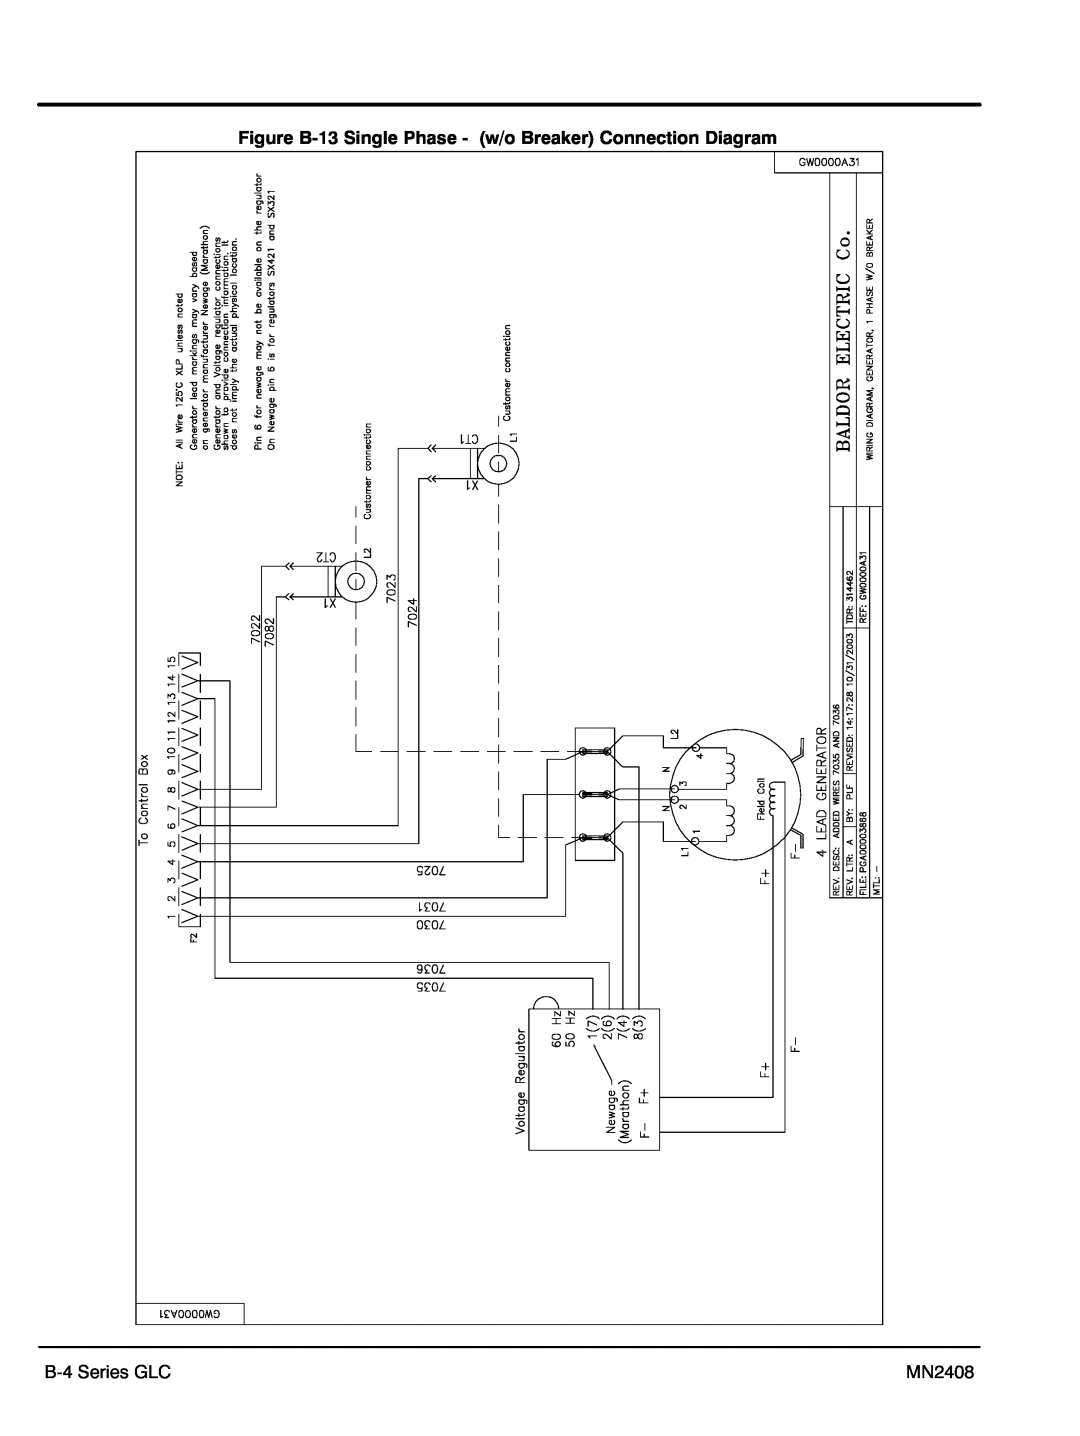 Baldor GLC20, GLC60, GLC105, GLC45 manual Figure B‐13 Single Phase - w/o Breaker Connection Diagram, B‐4 Series GLC, MN2408 